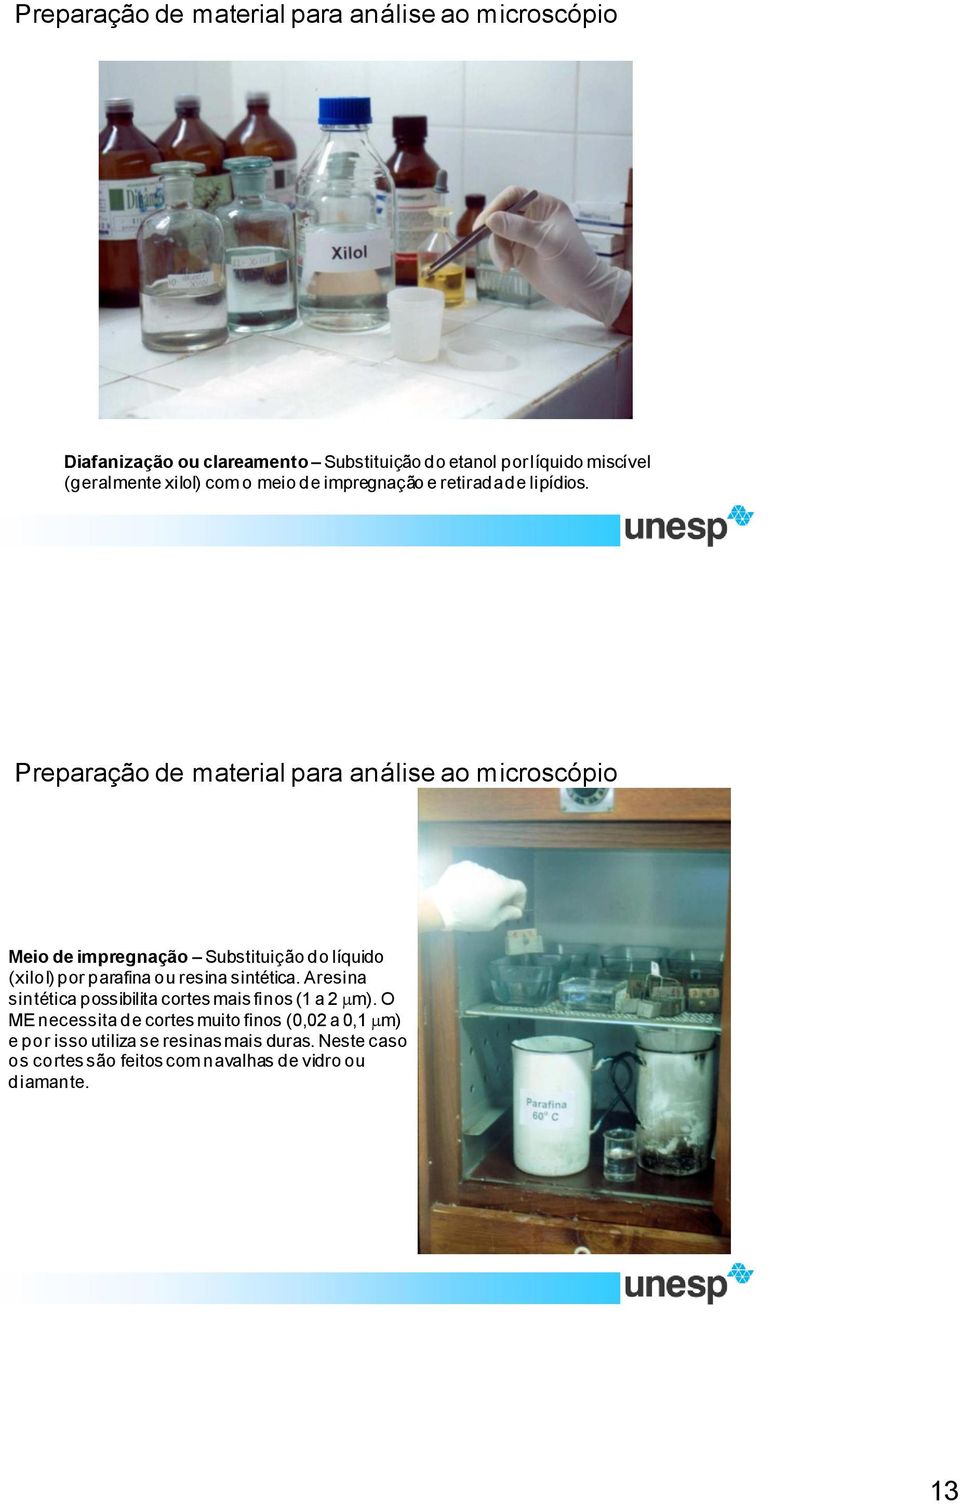 Preparação de material para análise ao microscópio Meio de impregnação Substituição do líquido (xilol) por parafina ou resina sintética.